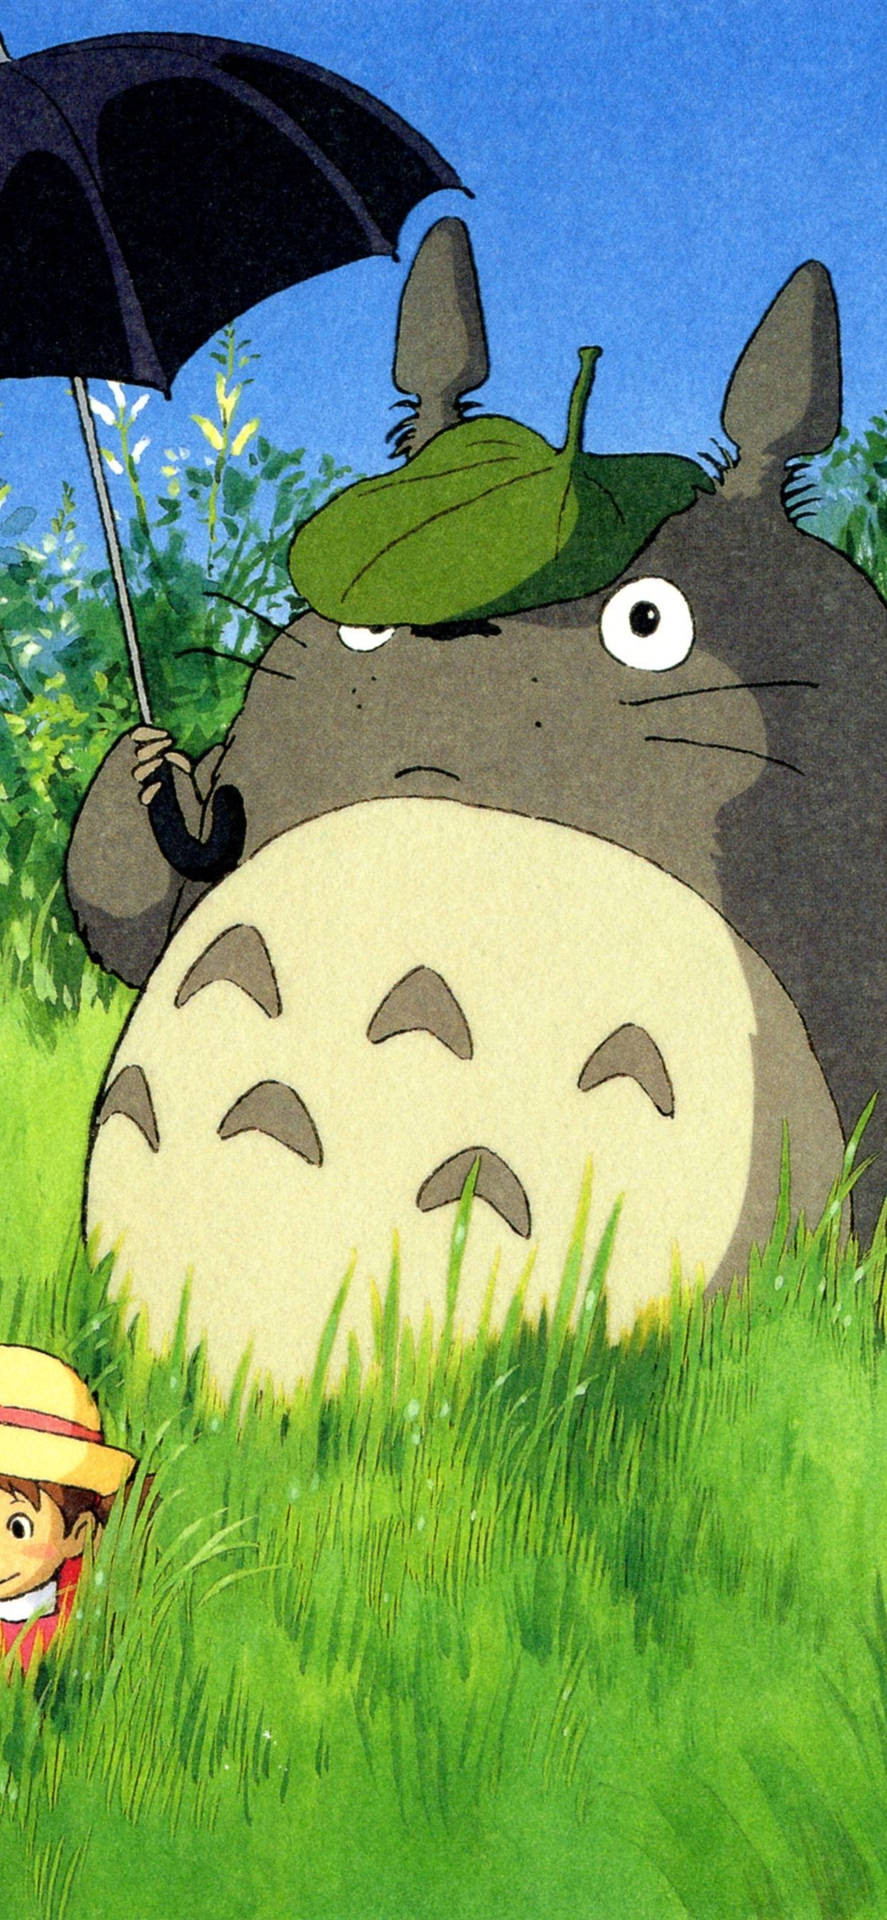 Imagendisfruta De Las Clásicas Películas De Studio Ghibli En Tu Teléfono. Fondo de pantalla